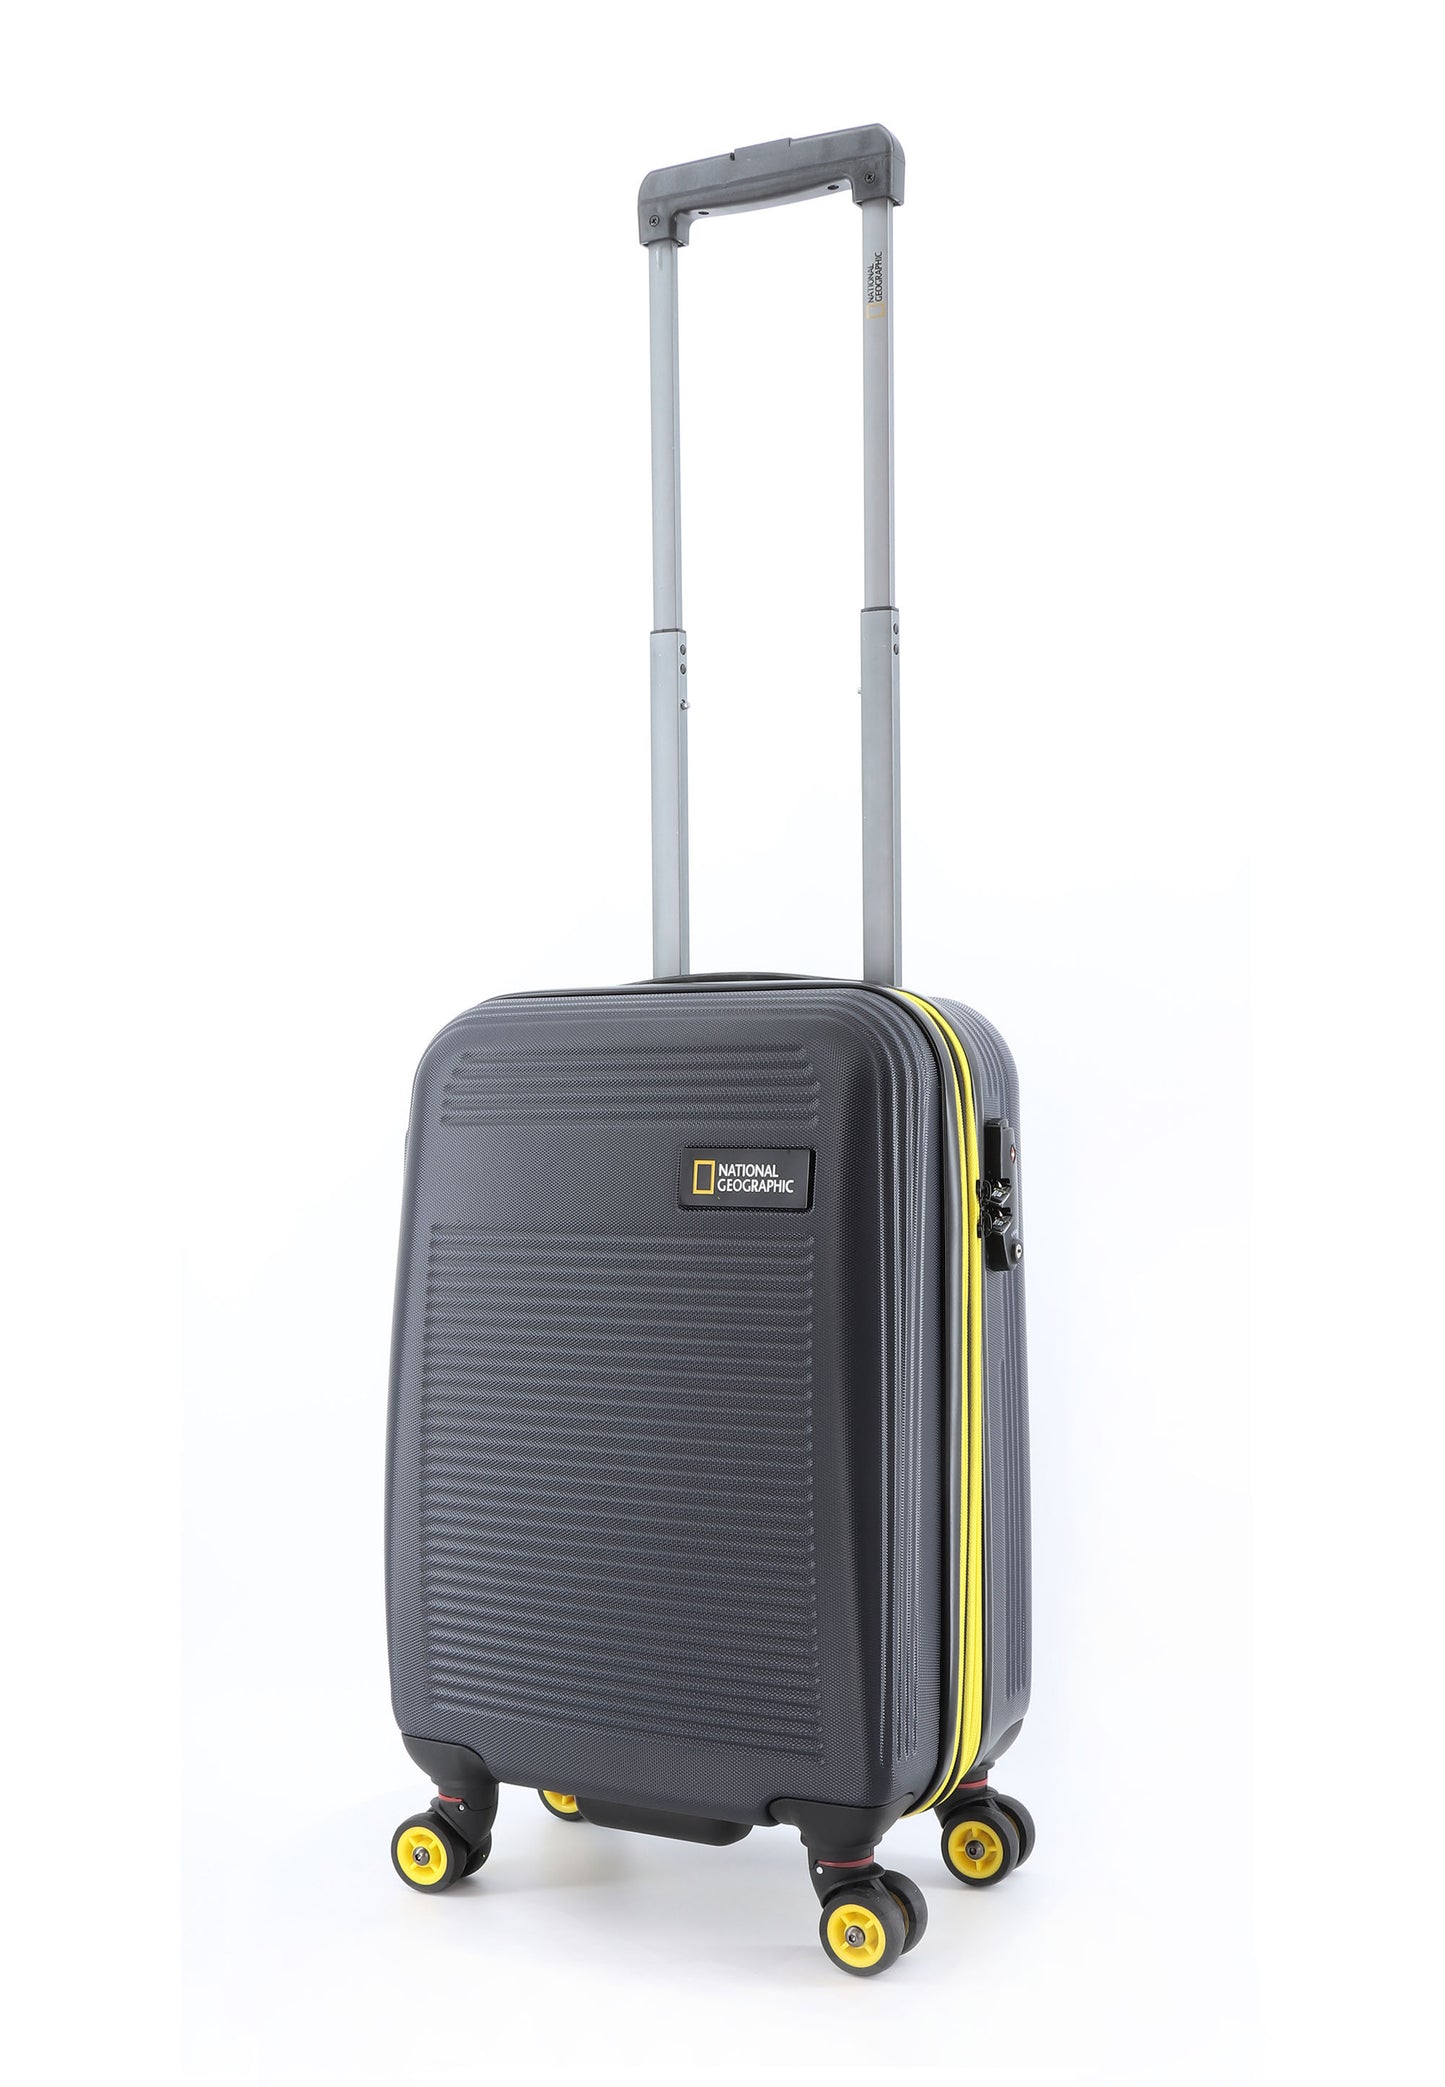 Valise rigide pour bagage à main National Geographic / Trolley / Valise de voyage - 54 cm (Petite) - Aérodrome - Noir